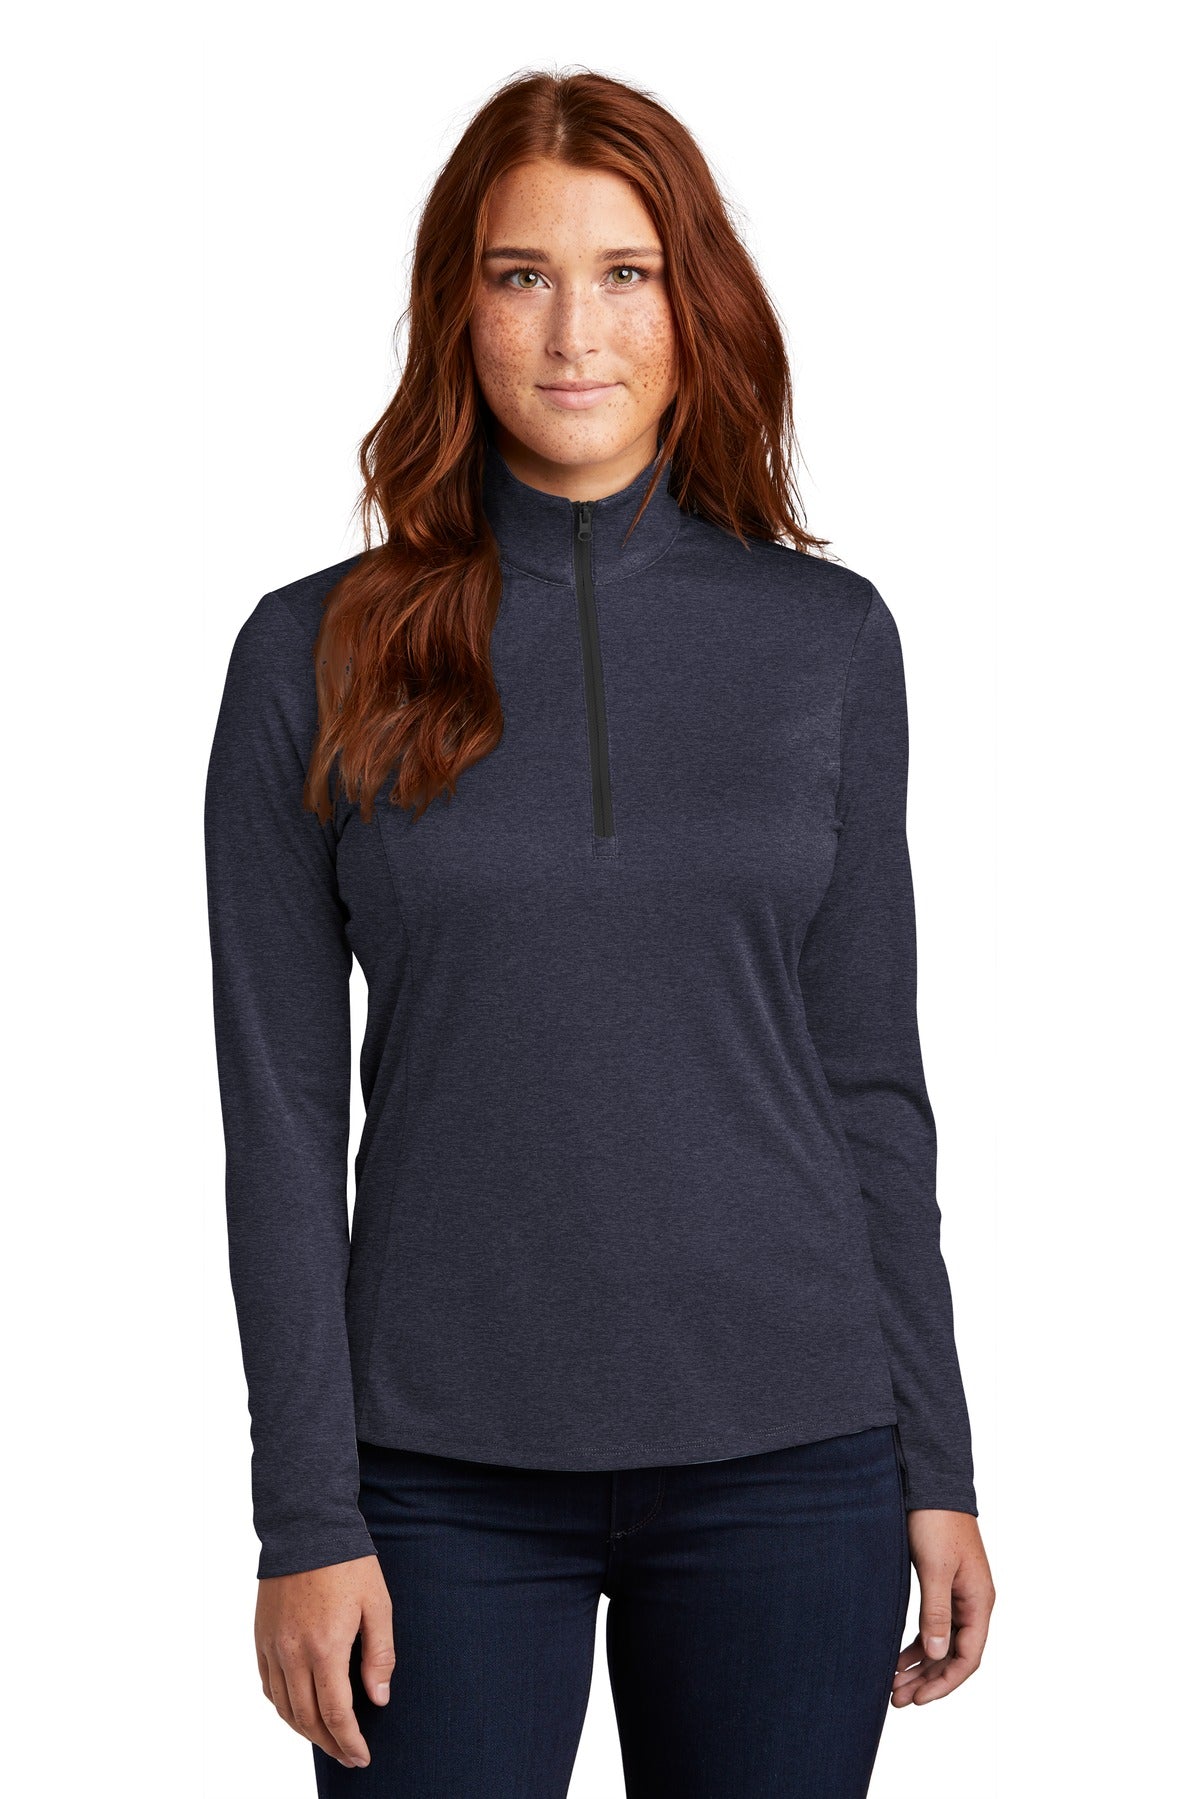 Sport-Tek ® Ladies Endeavor 1/2-Zip Pullover. LST469